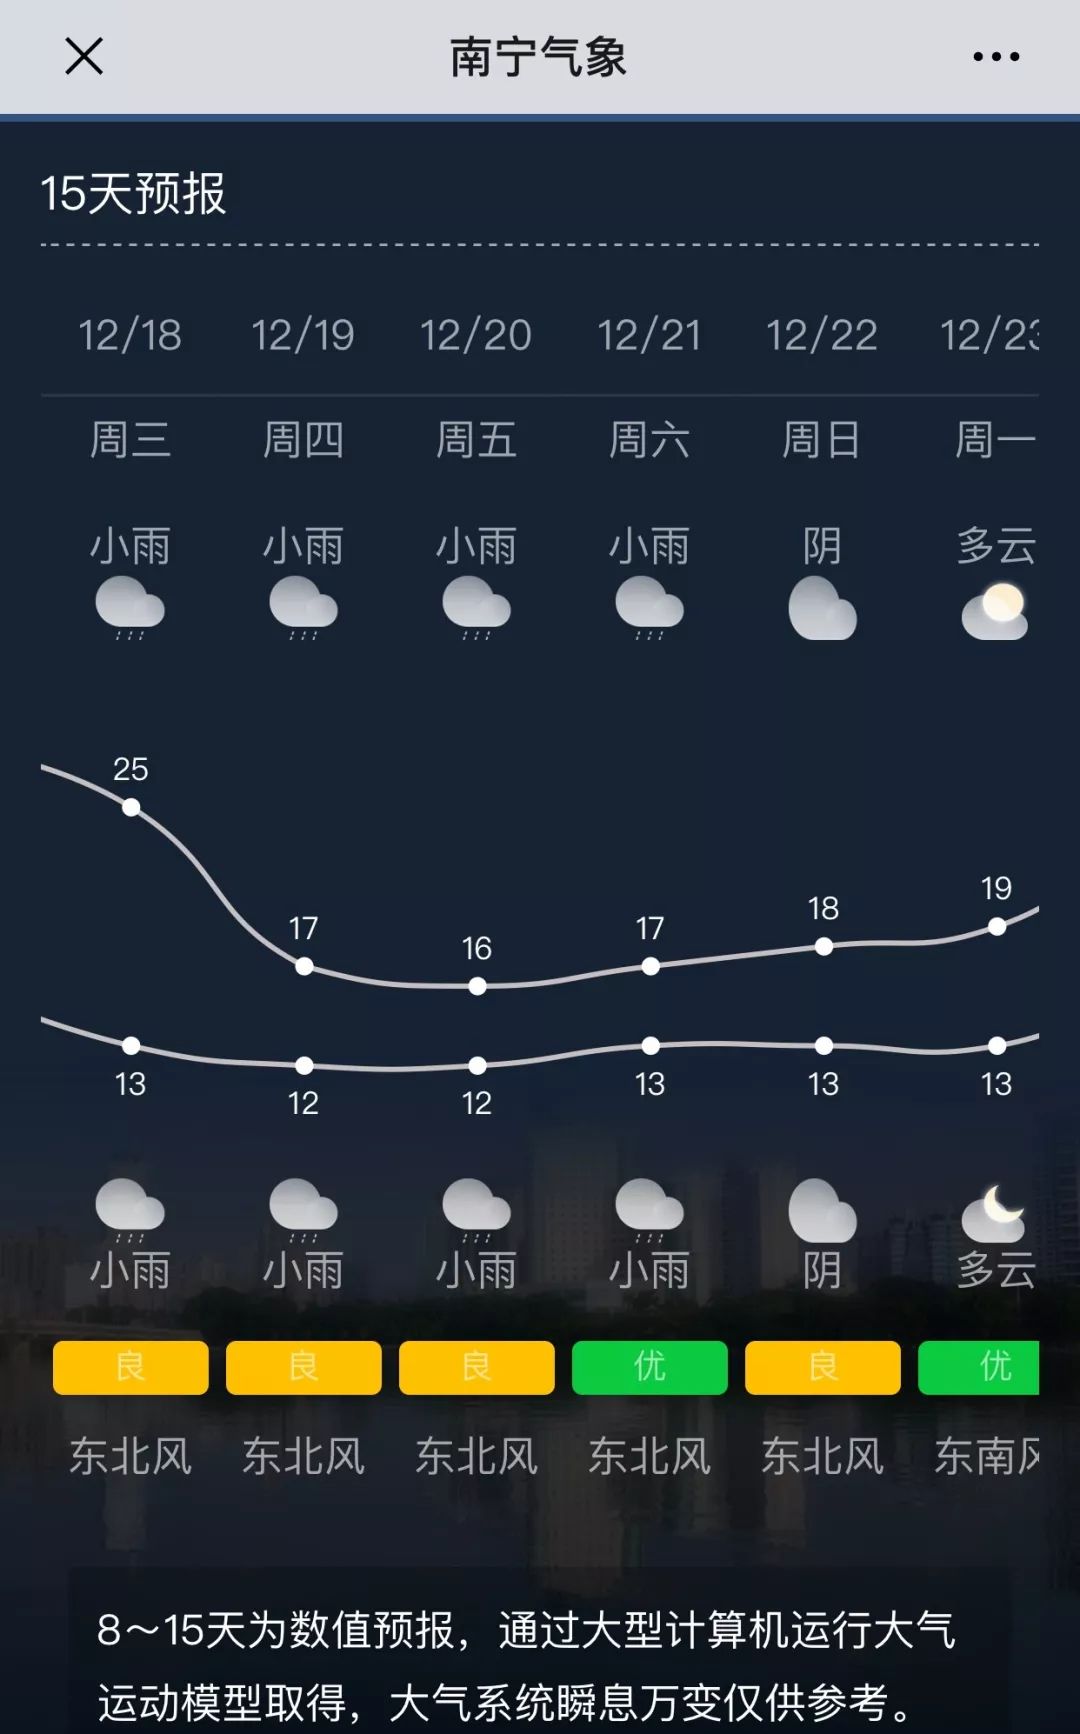 低温8-10℃,高温12-14℃ 广西各地 未来六天天气预报 南宁 柳州 桂林